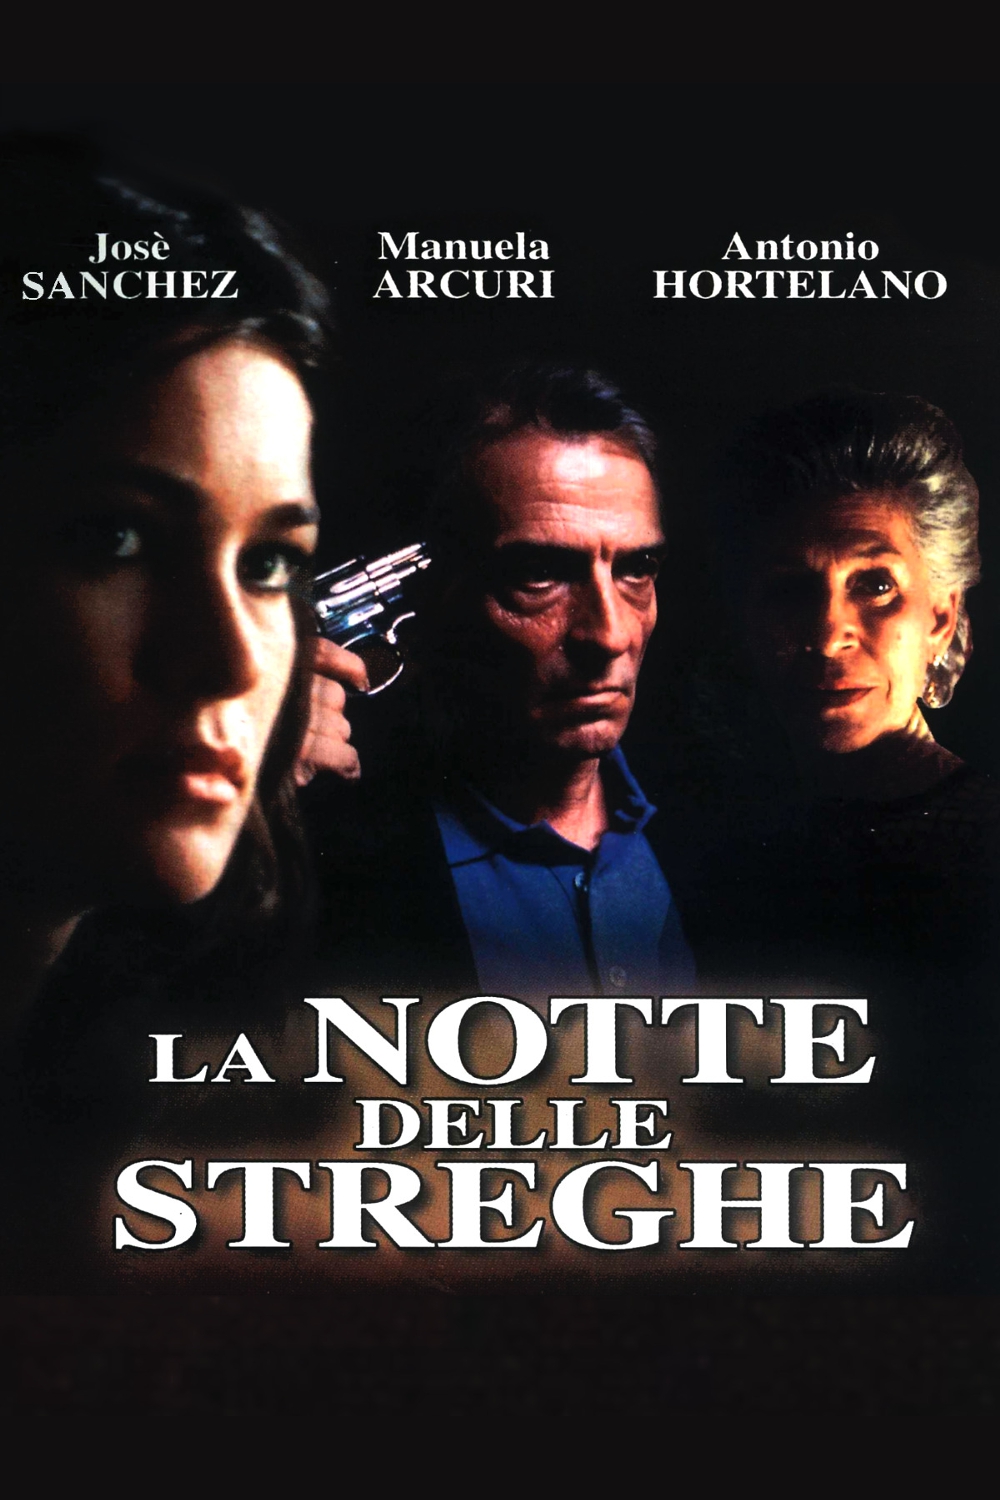 La notte delle streghe (2003)